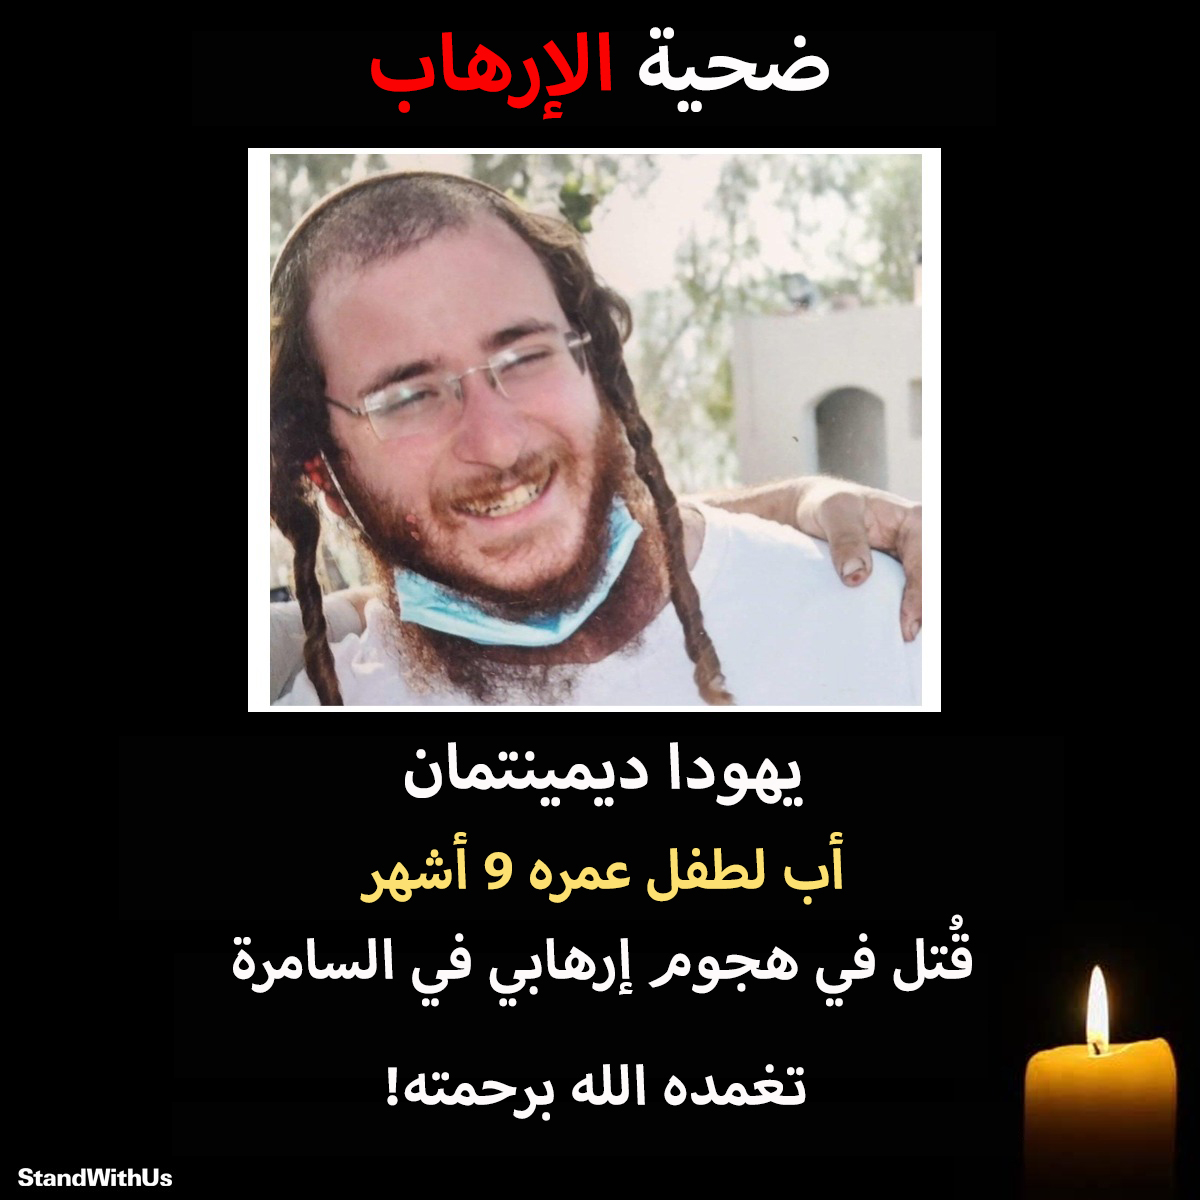 المواطن الإسرائيلي يهودا ديمينتمان (25 عامًا) قُتل في هجوم إطلاق نار إرهابي بالأمس بالقرب من بلدة حومش،...